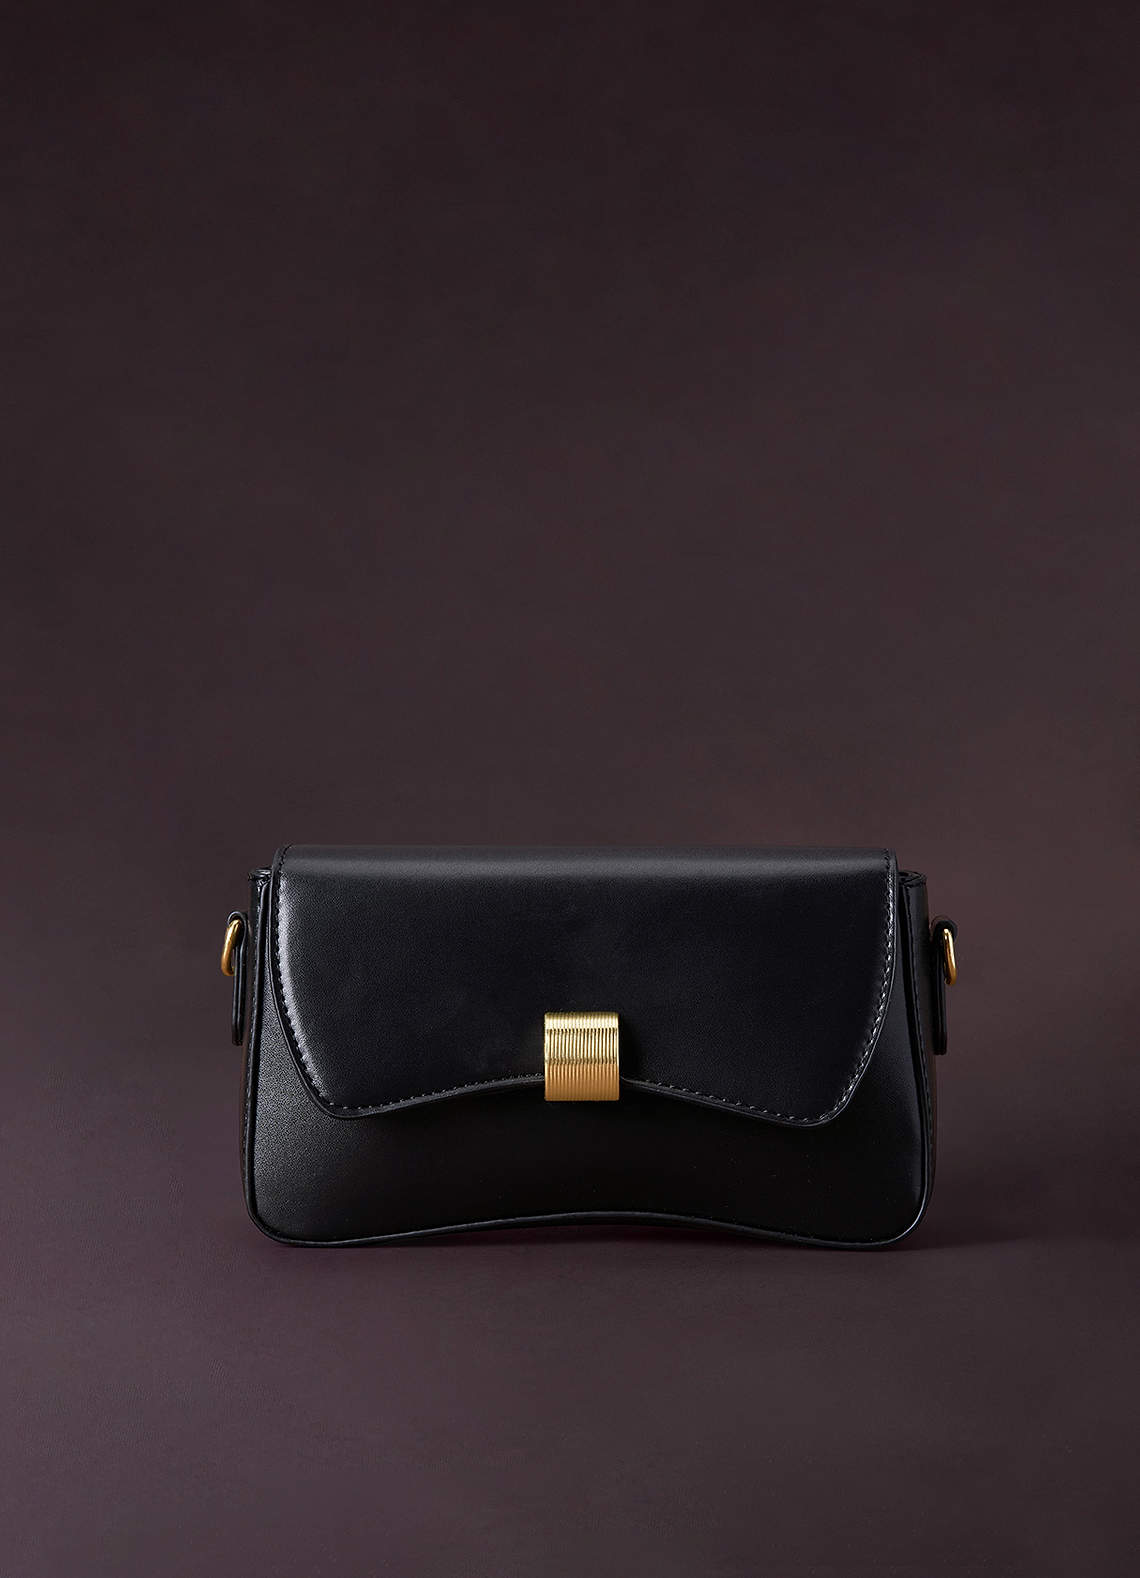 WOMEN FASHION UNDERARM Bag Star Zippers Shoulder Bag Casual Handbags  (Black) $12.49 - PicClick AU